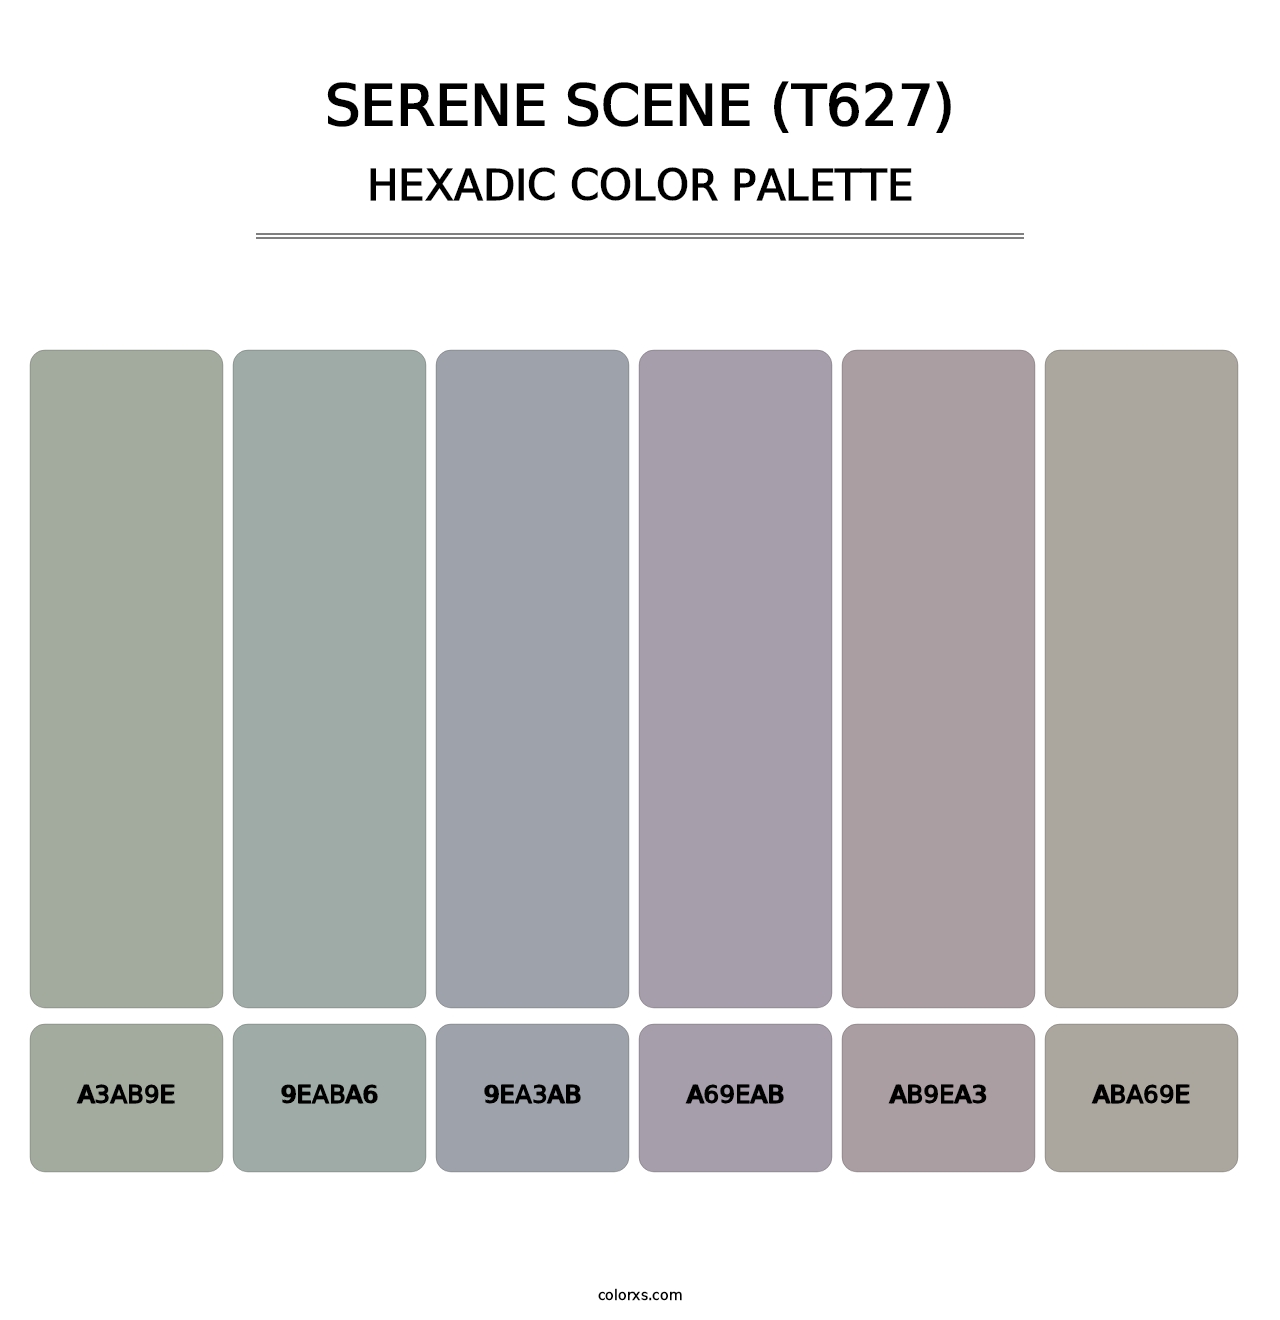 Serene Scene (T627) - Hexadic Color Palette